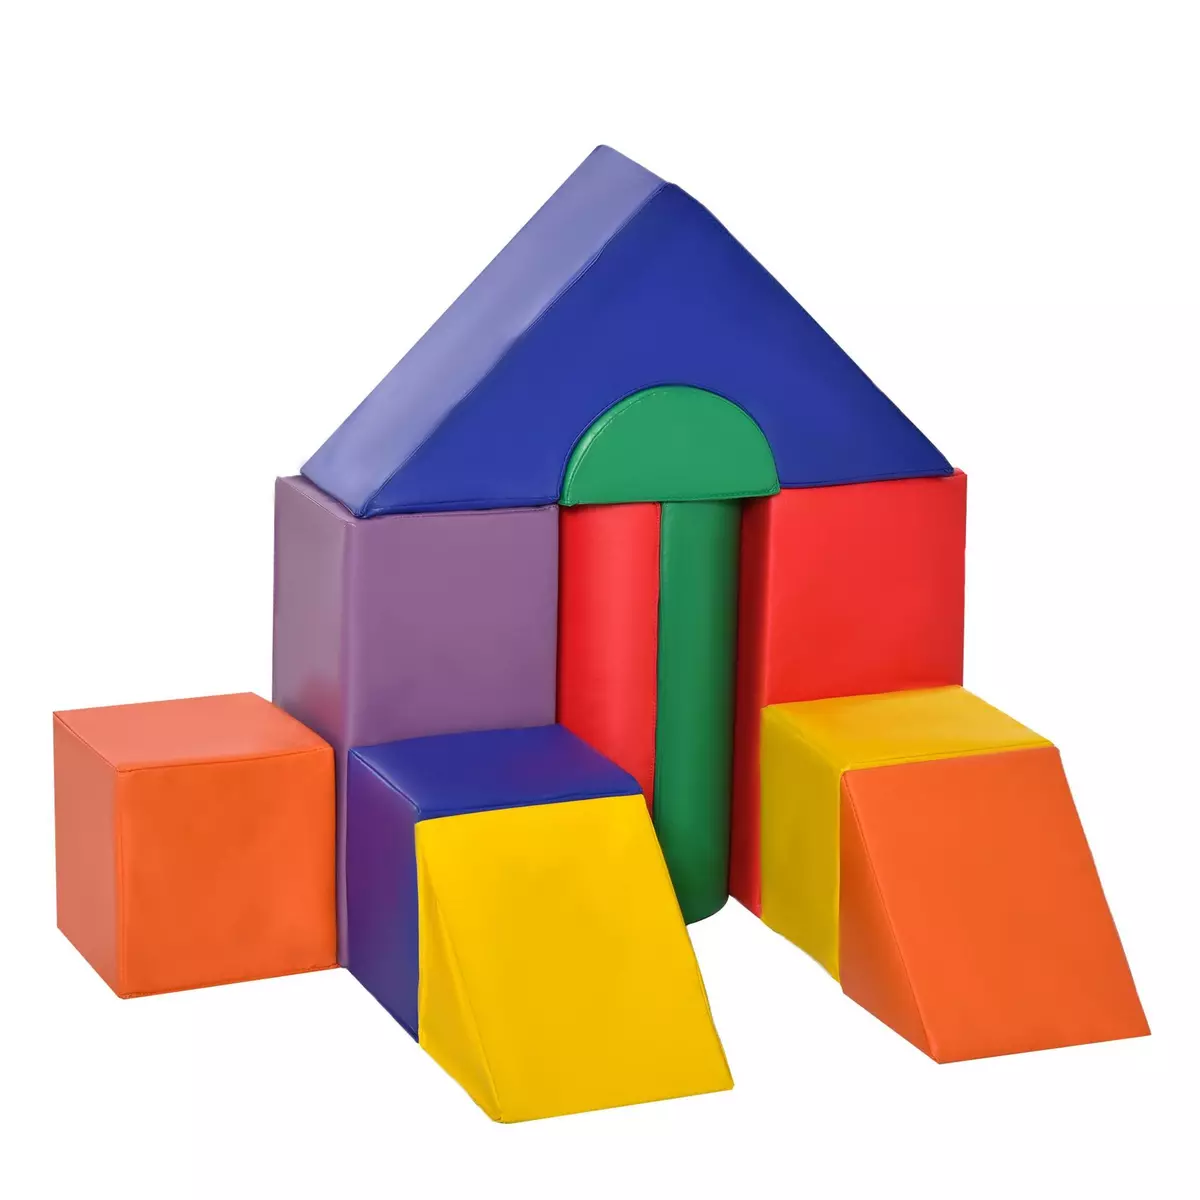 HOMCOM 11 blocs de construction en mousse XXL - modules de motricité - jouets éducatifs - certifiés normes EN71-1-2-3 - mousse EPE revêtement PU multicolore